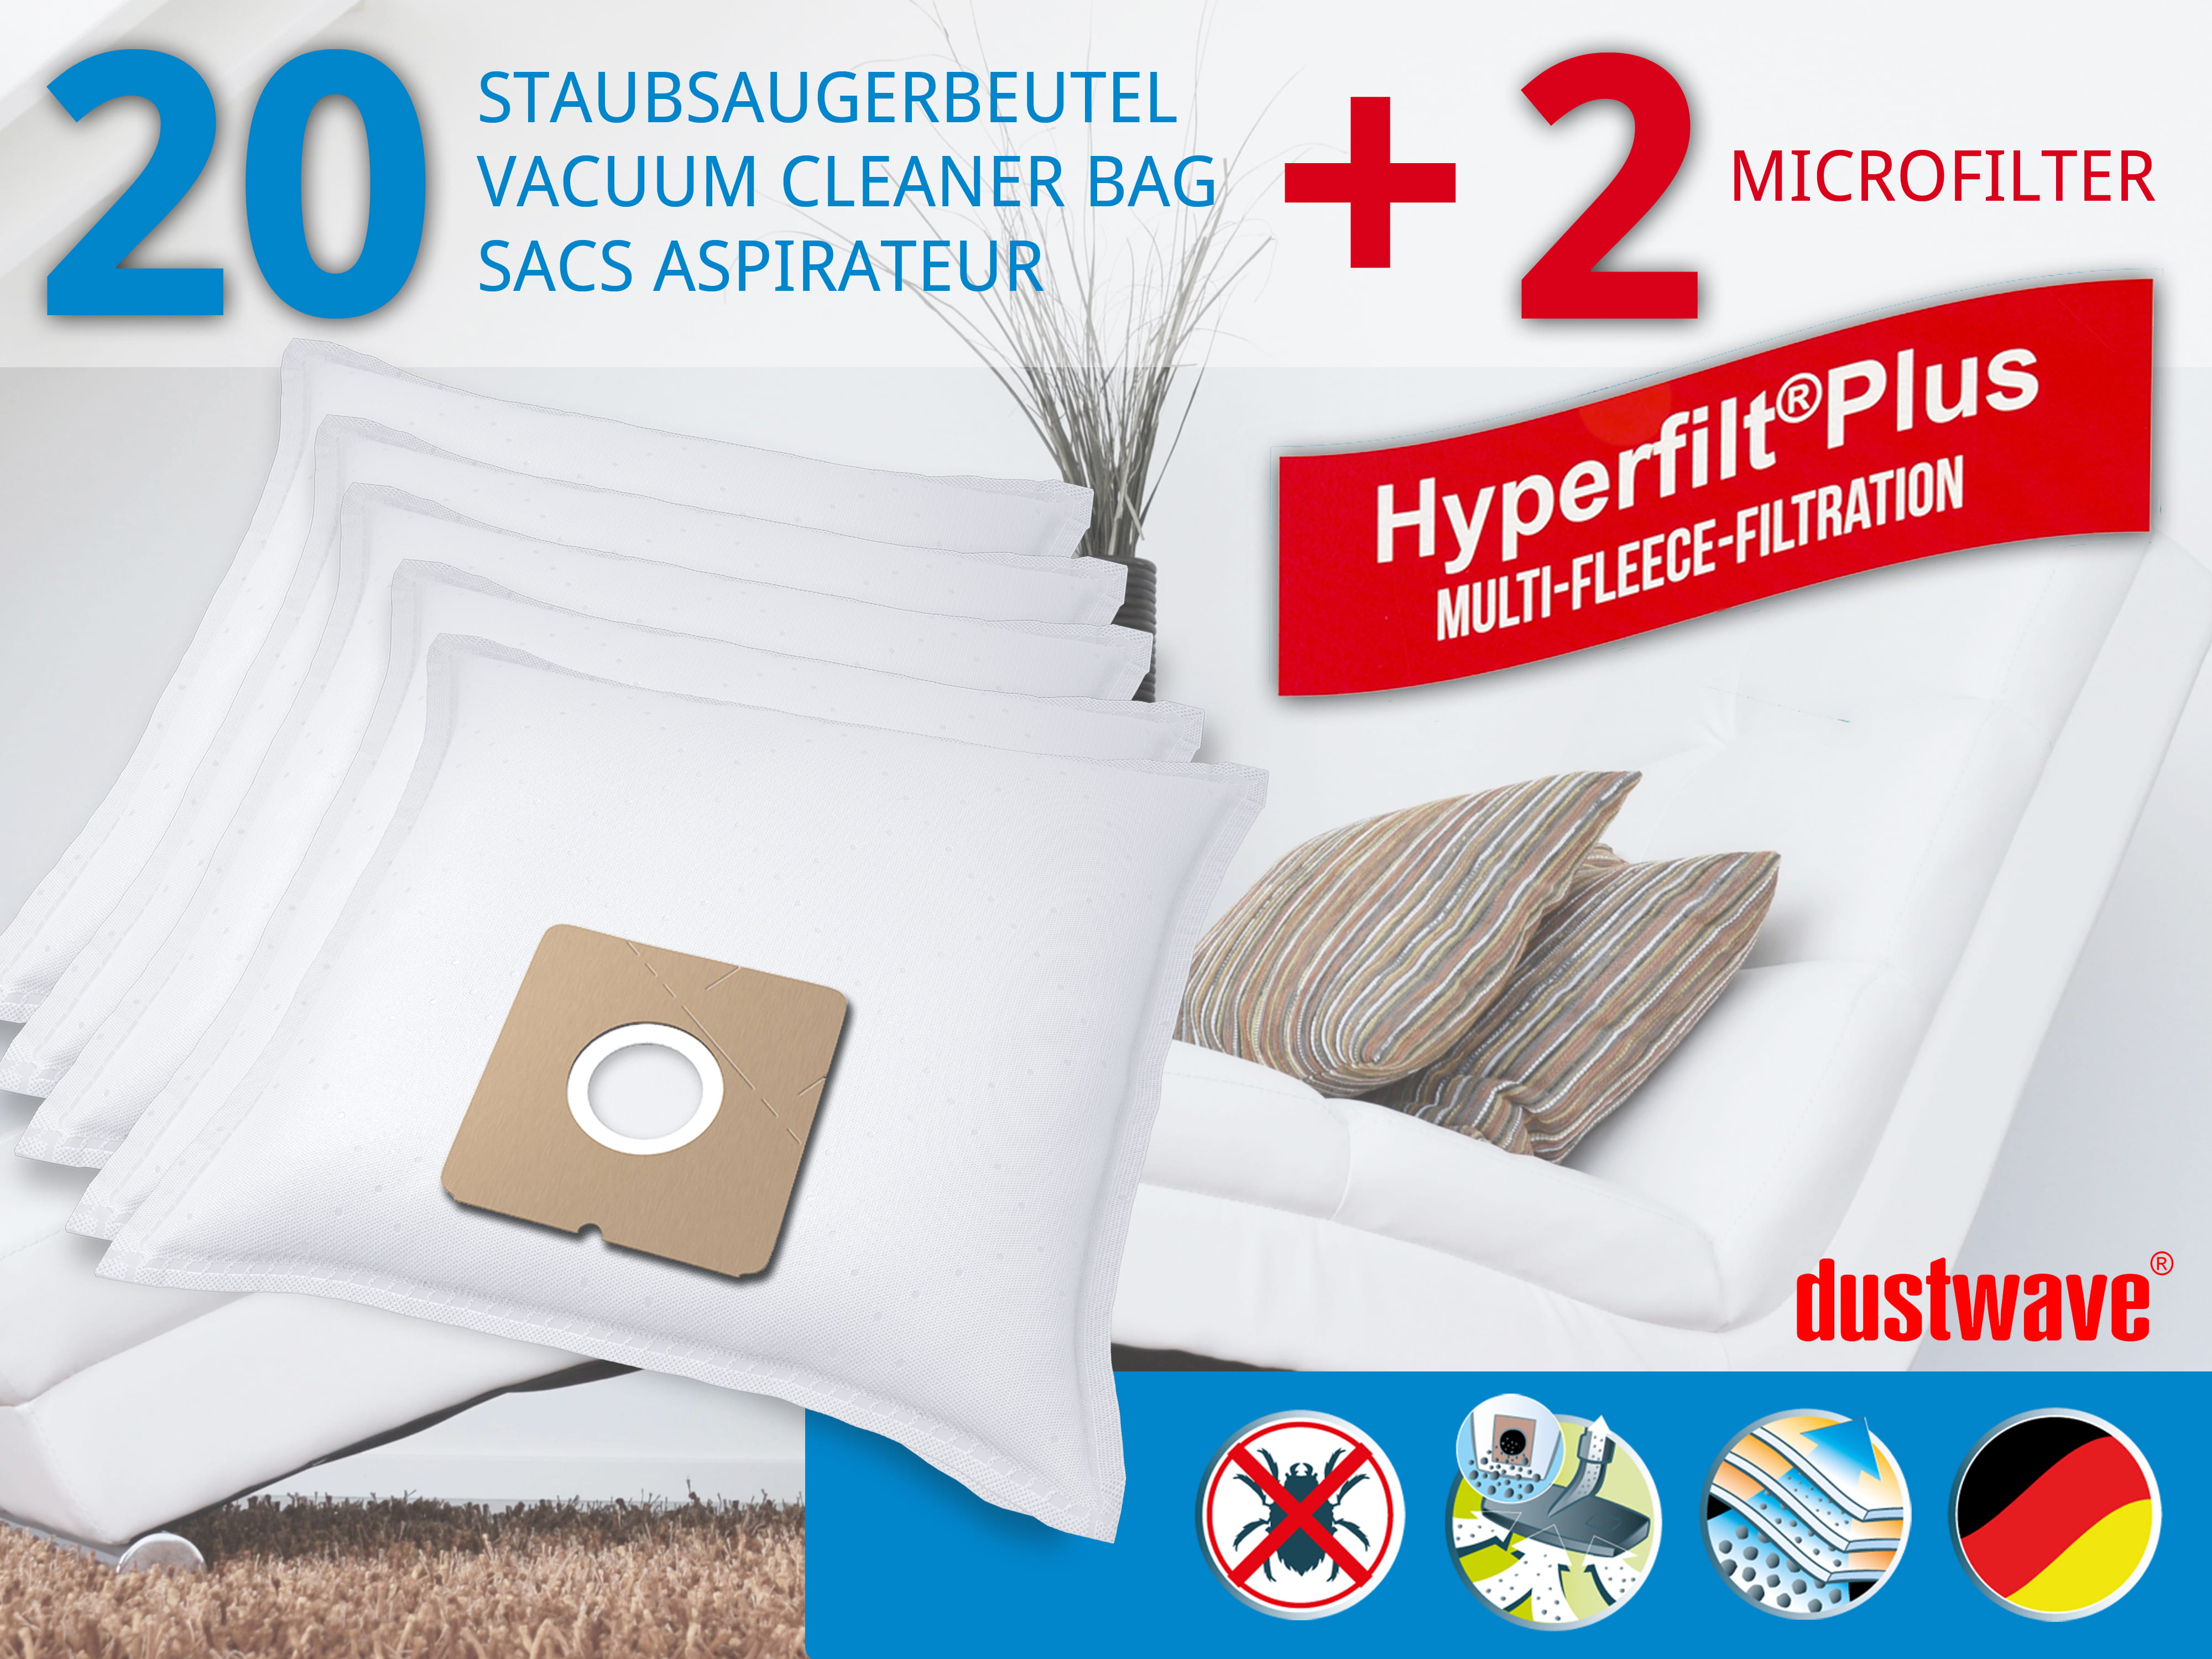 Dustwave® 20 Staubsaugerbeutel für Hoover KITT1505SKD - hocheffizient, mehrlagiges Mikrovlies mit Hygieneverschluss - Made in Germany